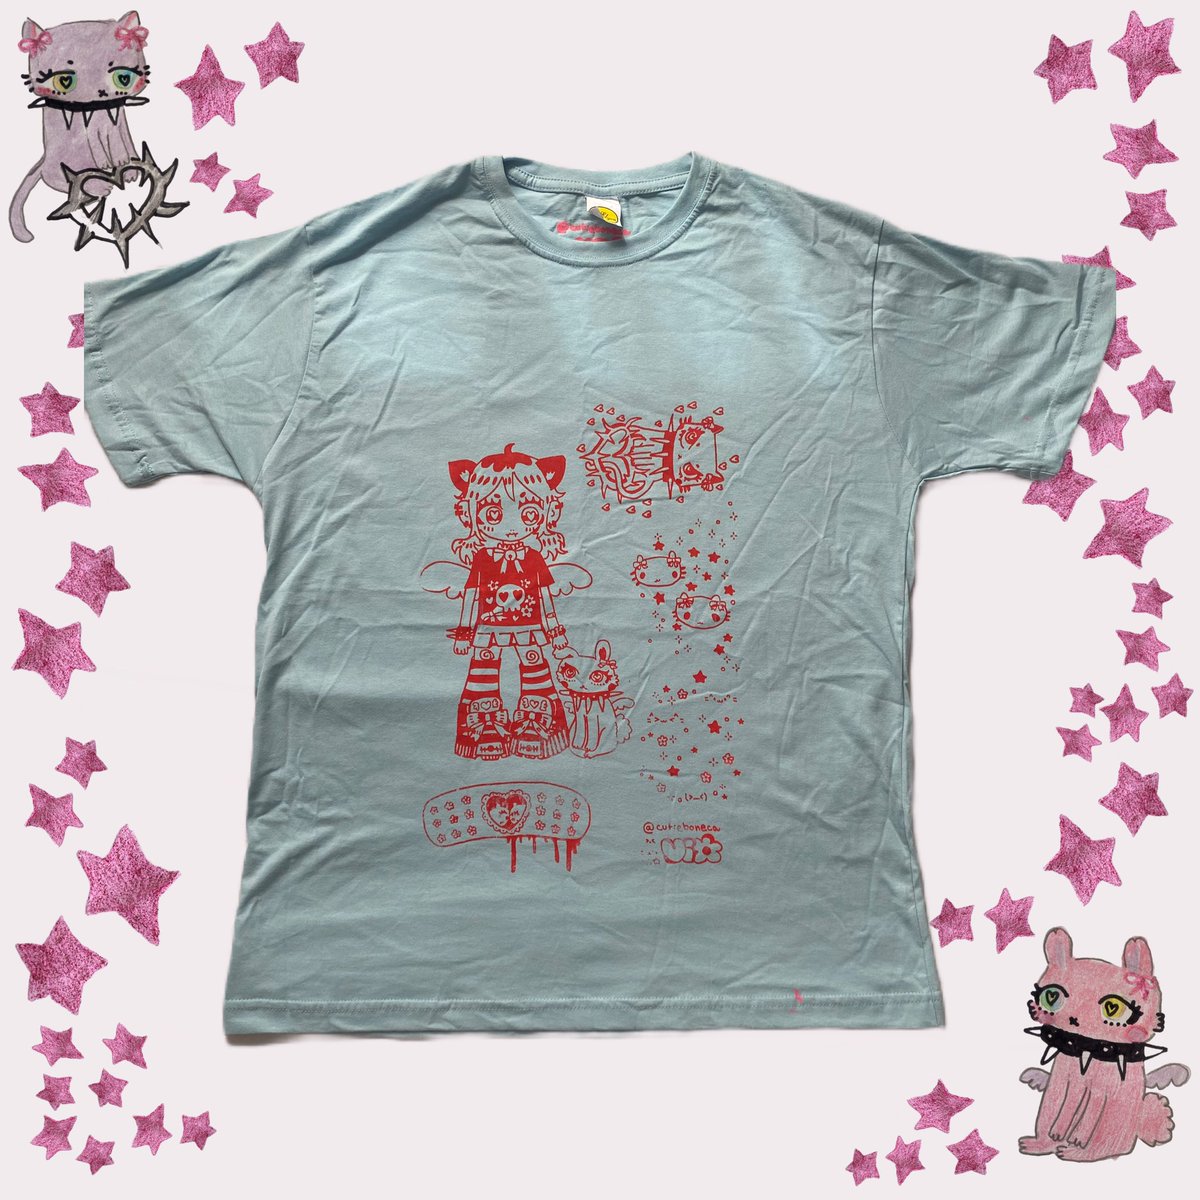 camisetas oversized em serigrafia ⋆｡ °✩trans vamp cat girl emo fairy⋆｡ °✩
disponiveis no meu ig cutieboneca